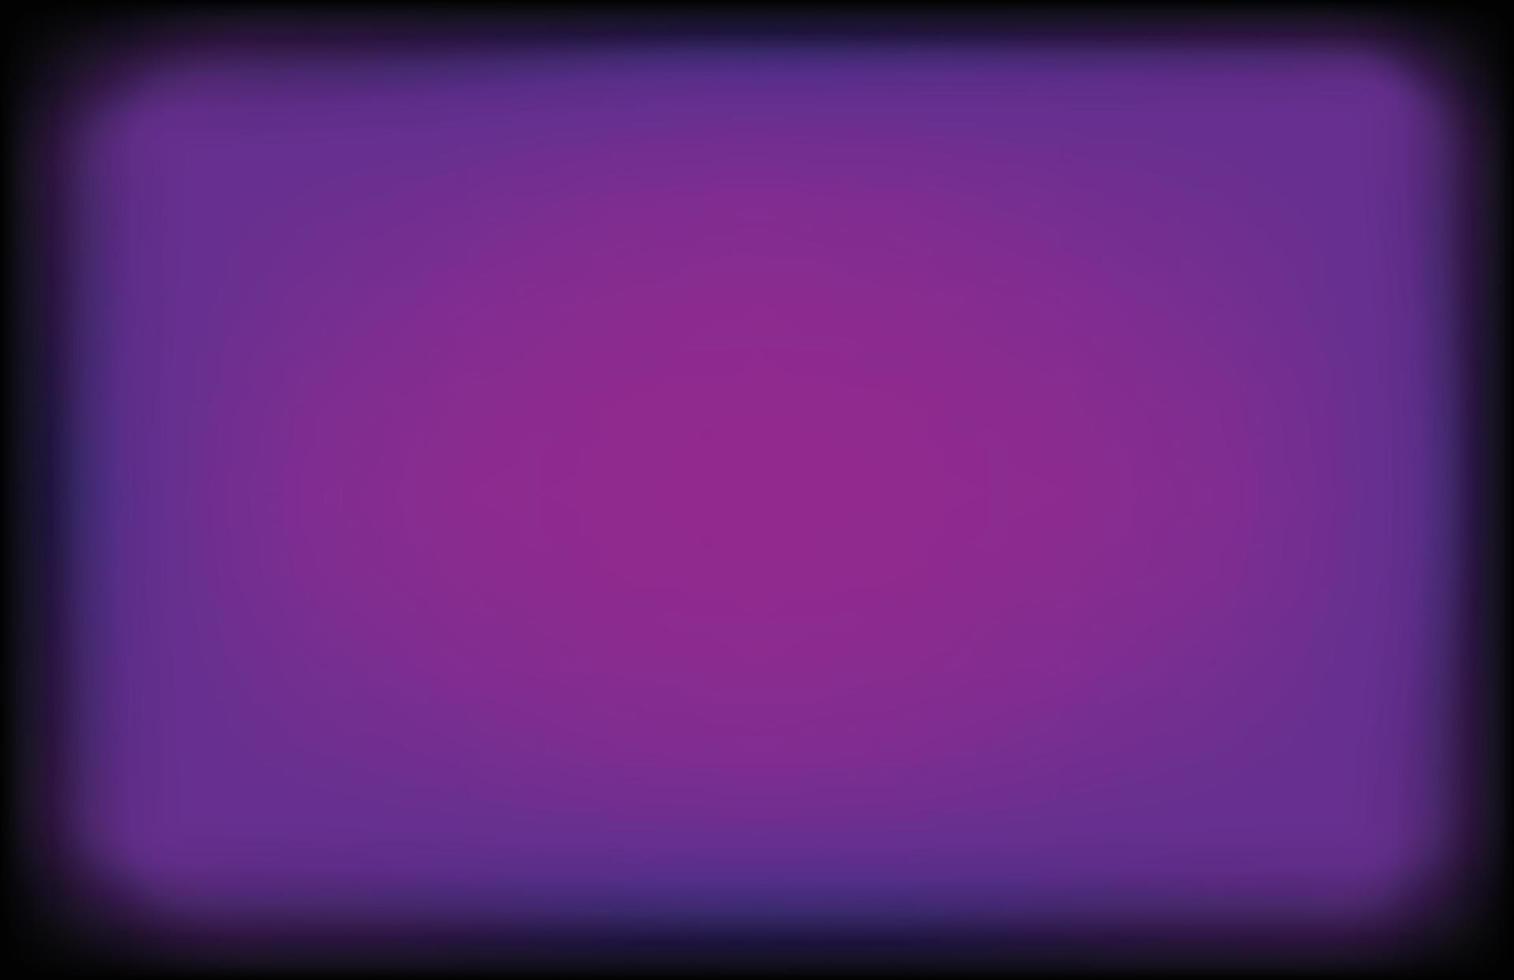 fondo borroso púrpura oscuro. patrón abstracto diseño degradado morado oscuro. vector